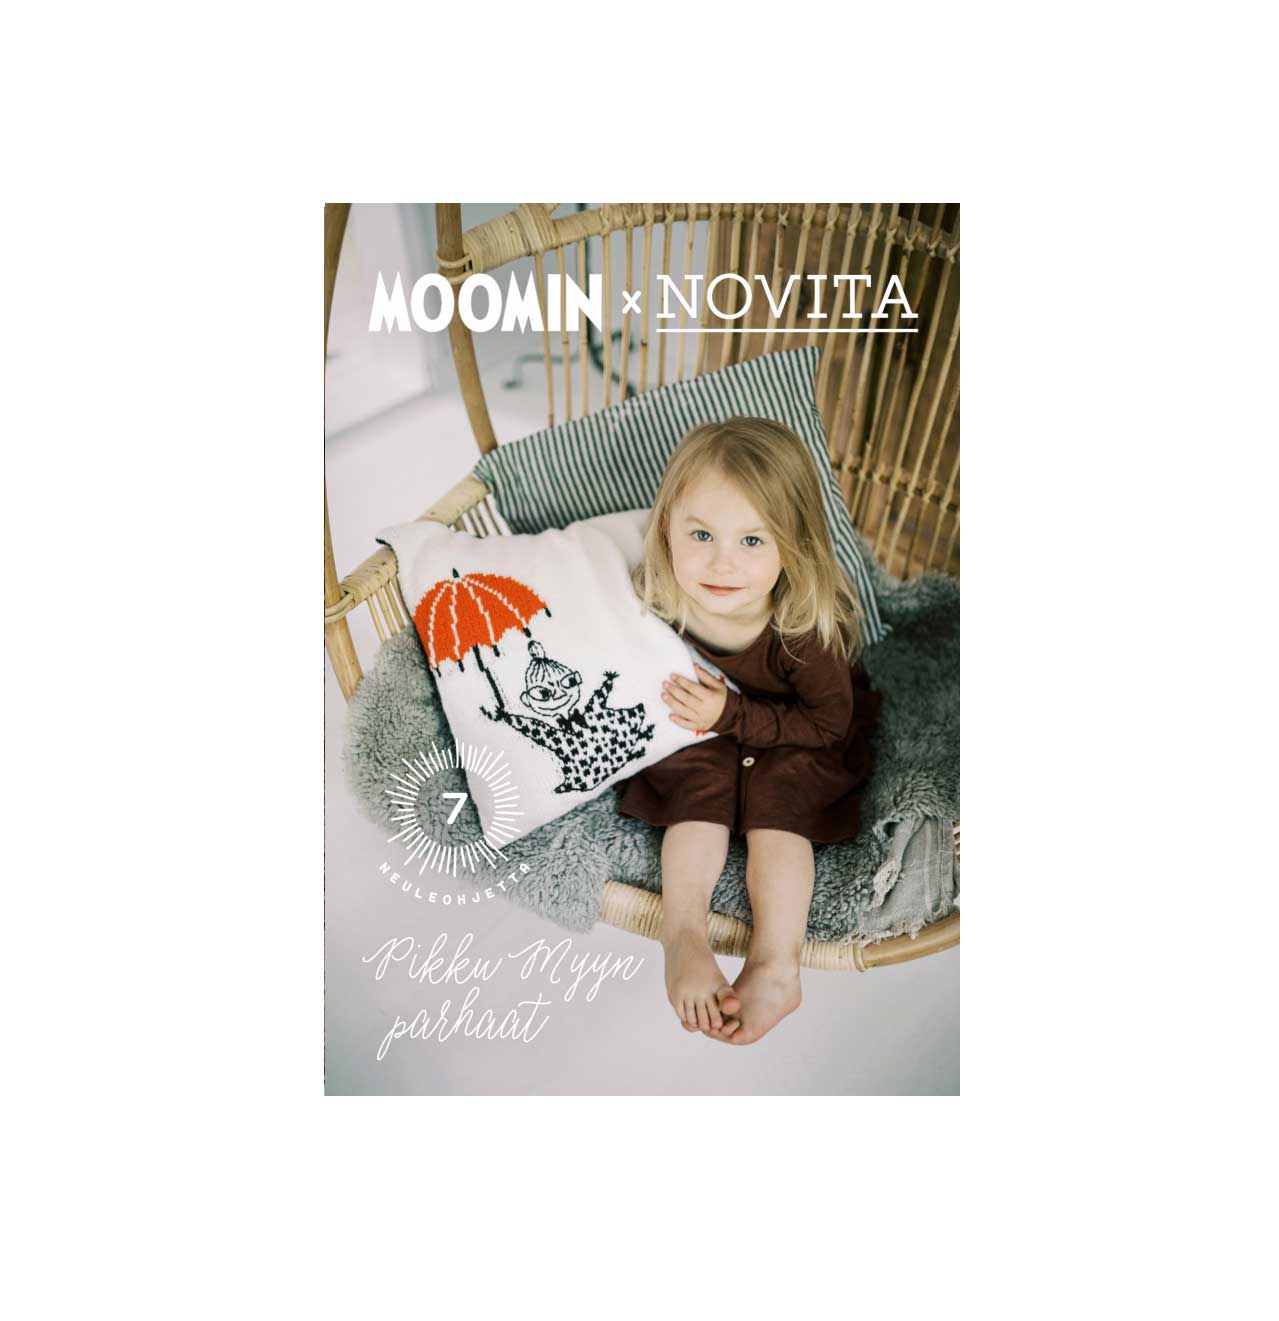  Magazine Moomin x Novita - Pikku Myyn parhaat, 2019 (in Finnish)